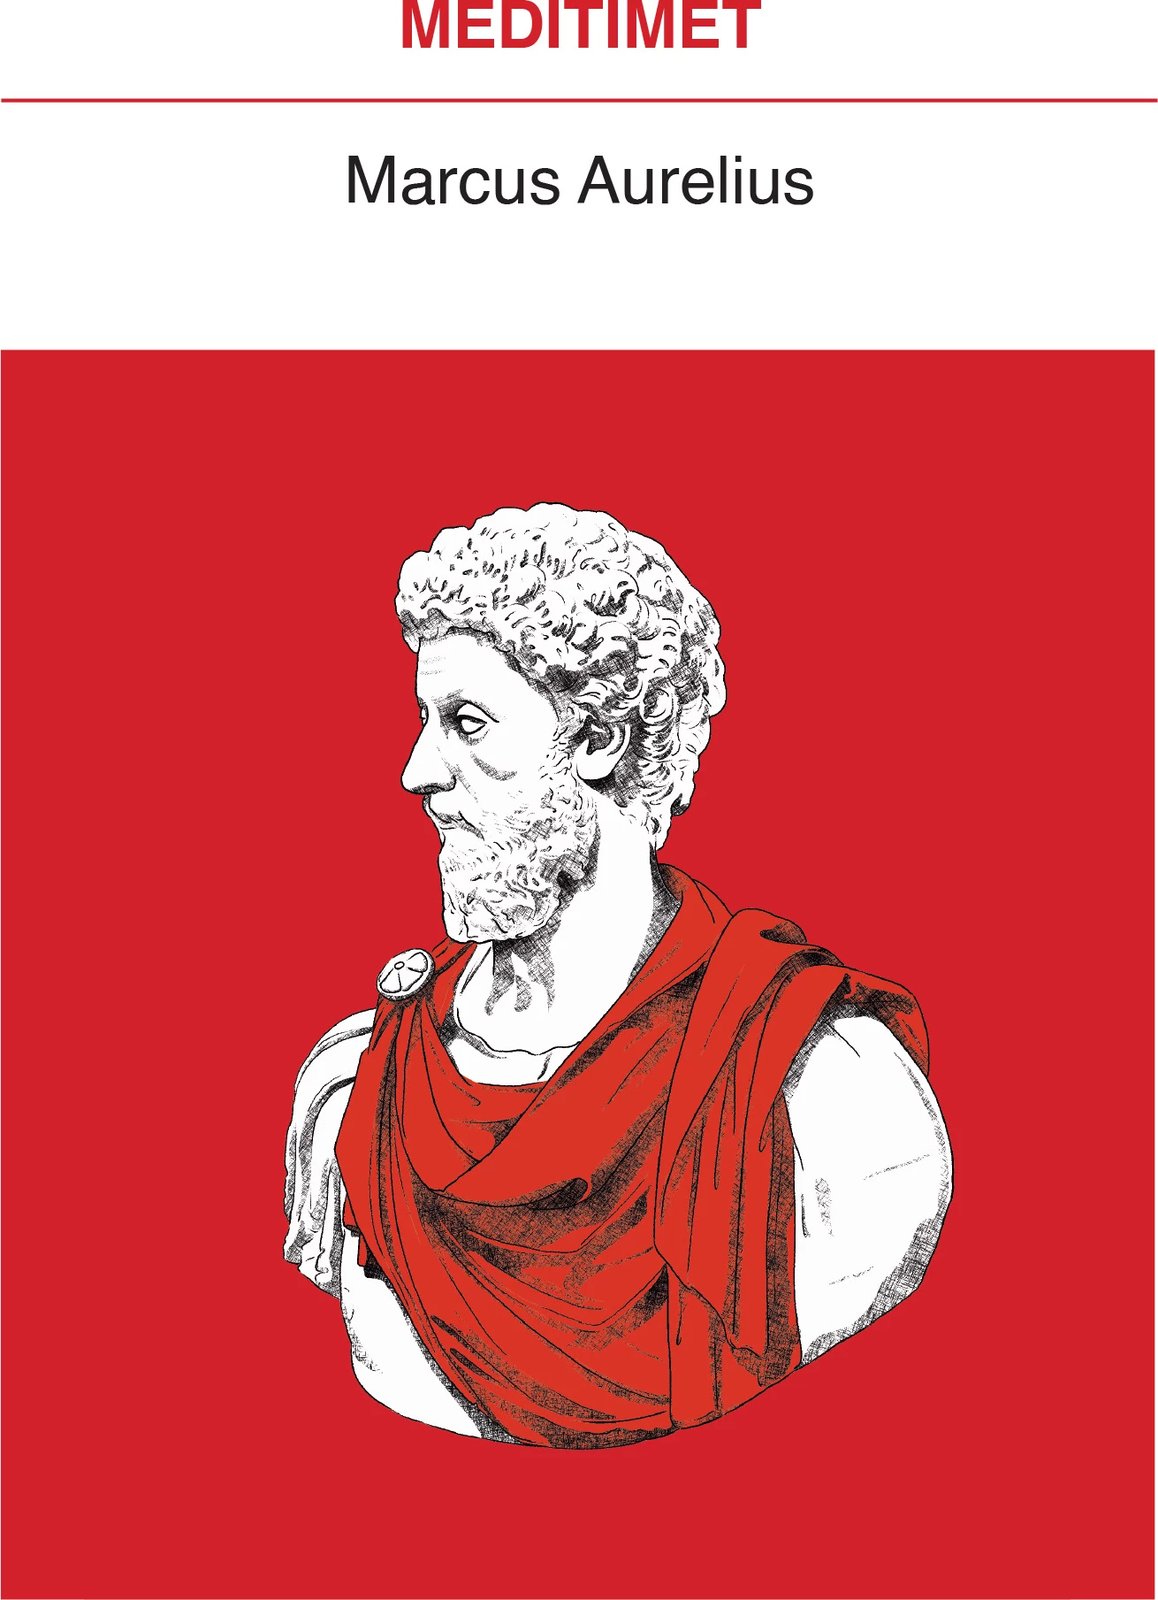 Meditimet, autori Marcus Aurelius